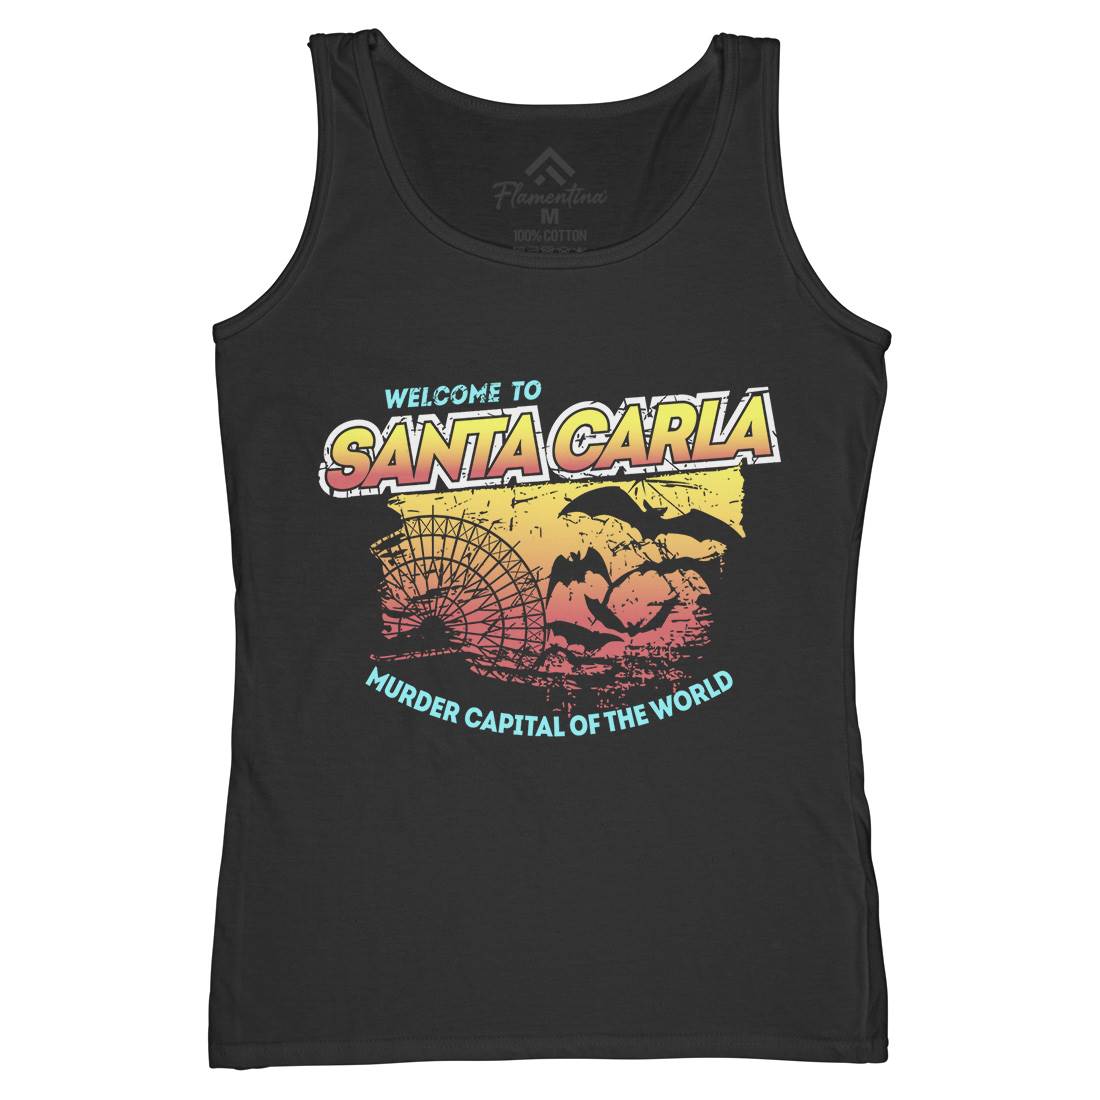 Santa Carla Womens Organic Tank Top Vest Horror D369